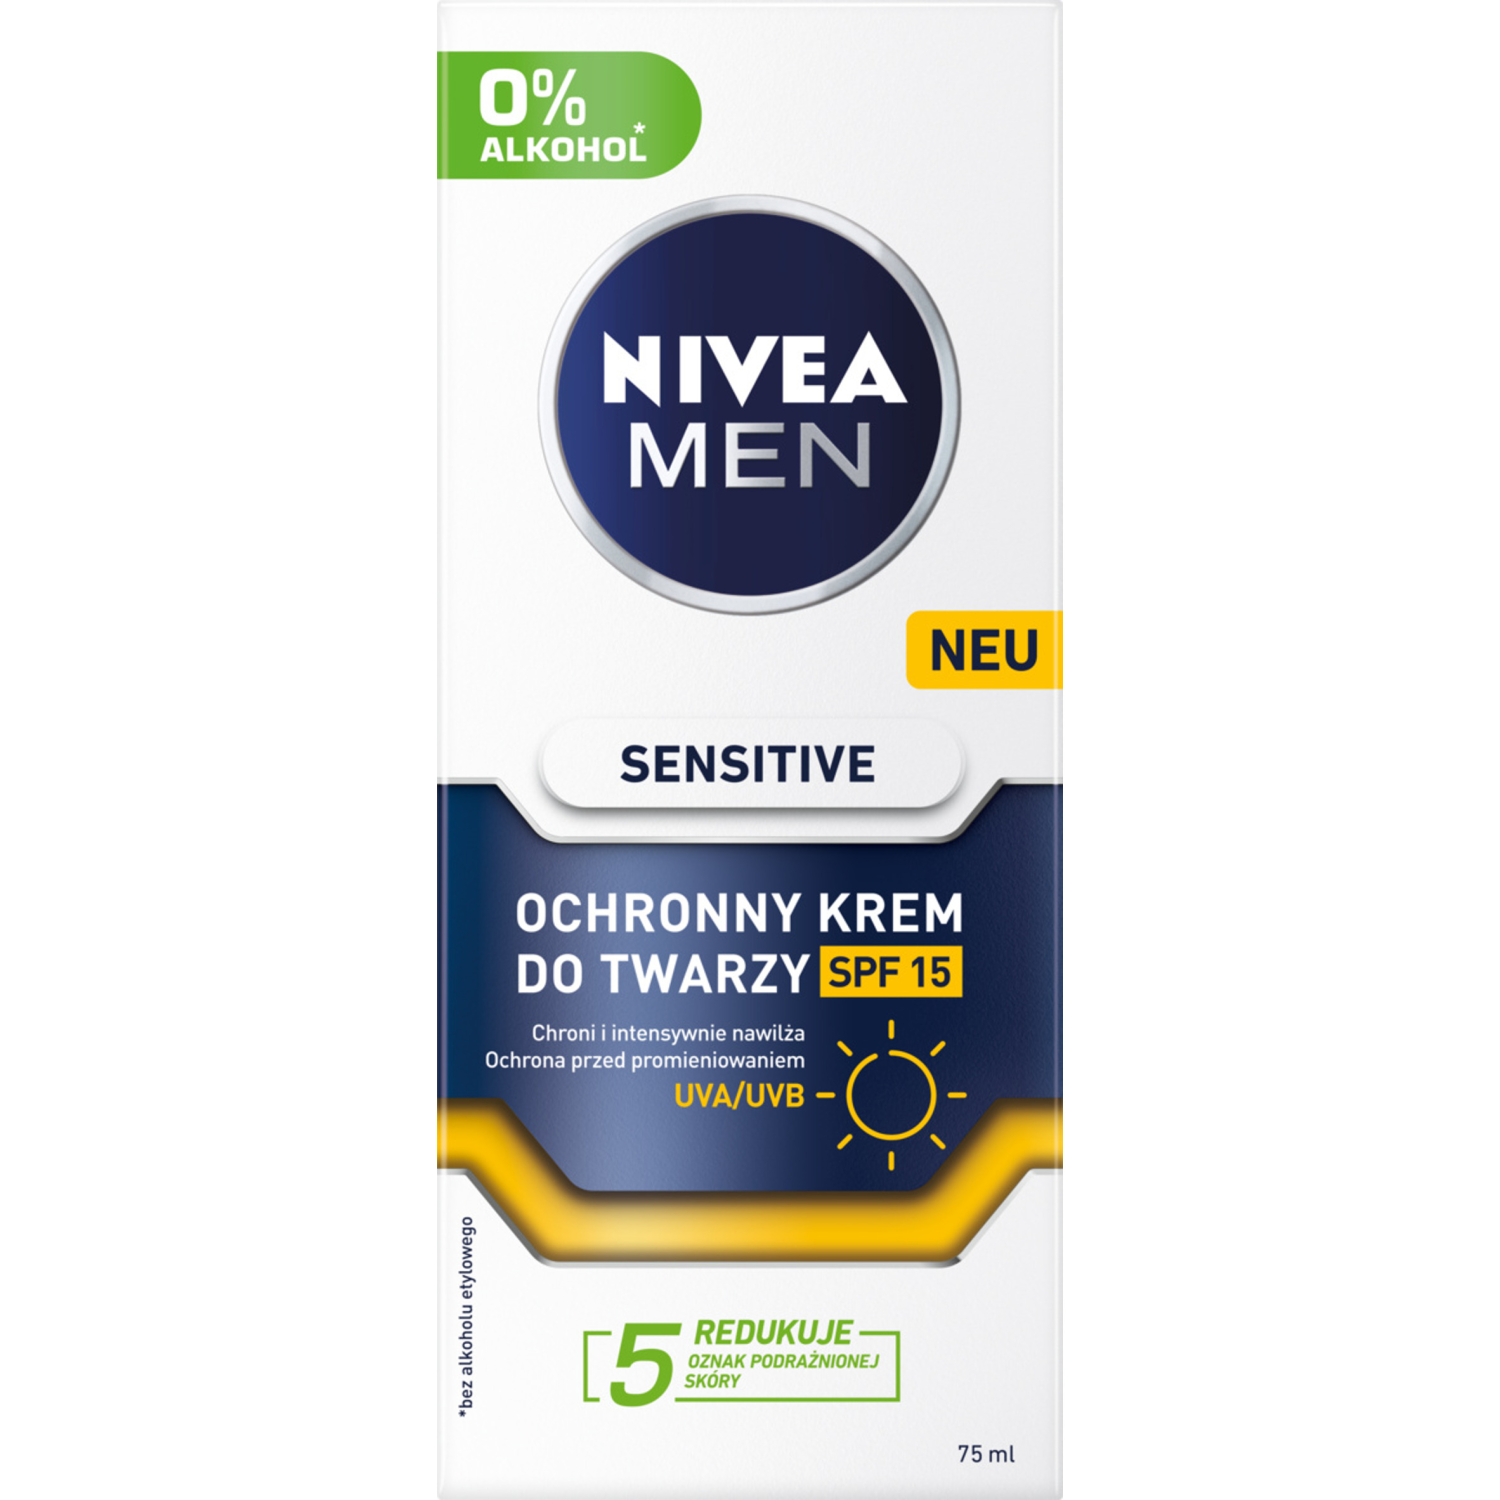 Защитный увлажняющий крем для лица с spf15 Nivea Men Sensitive, 50 мл крем для лица nivea men 75 мл